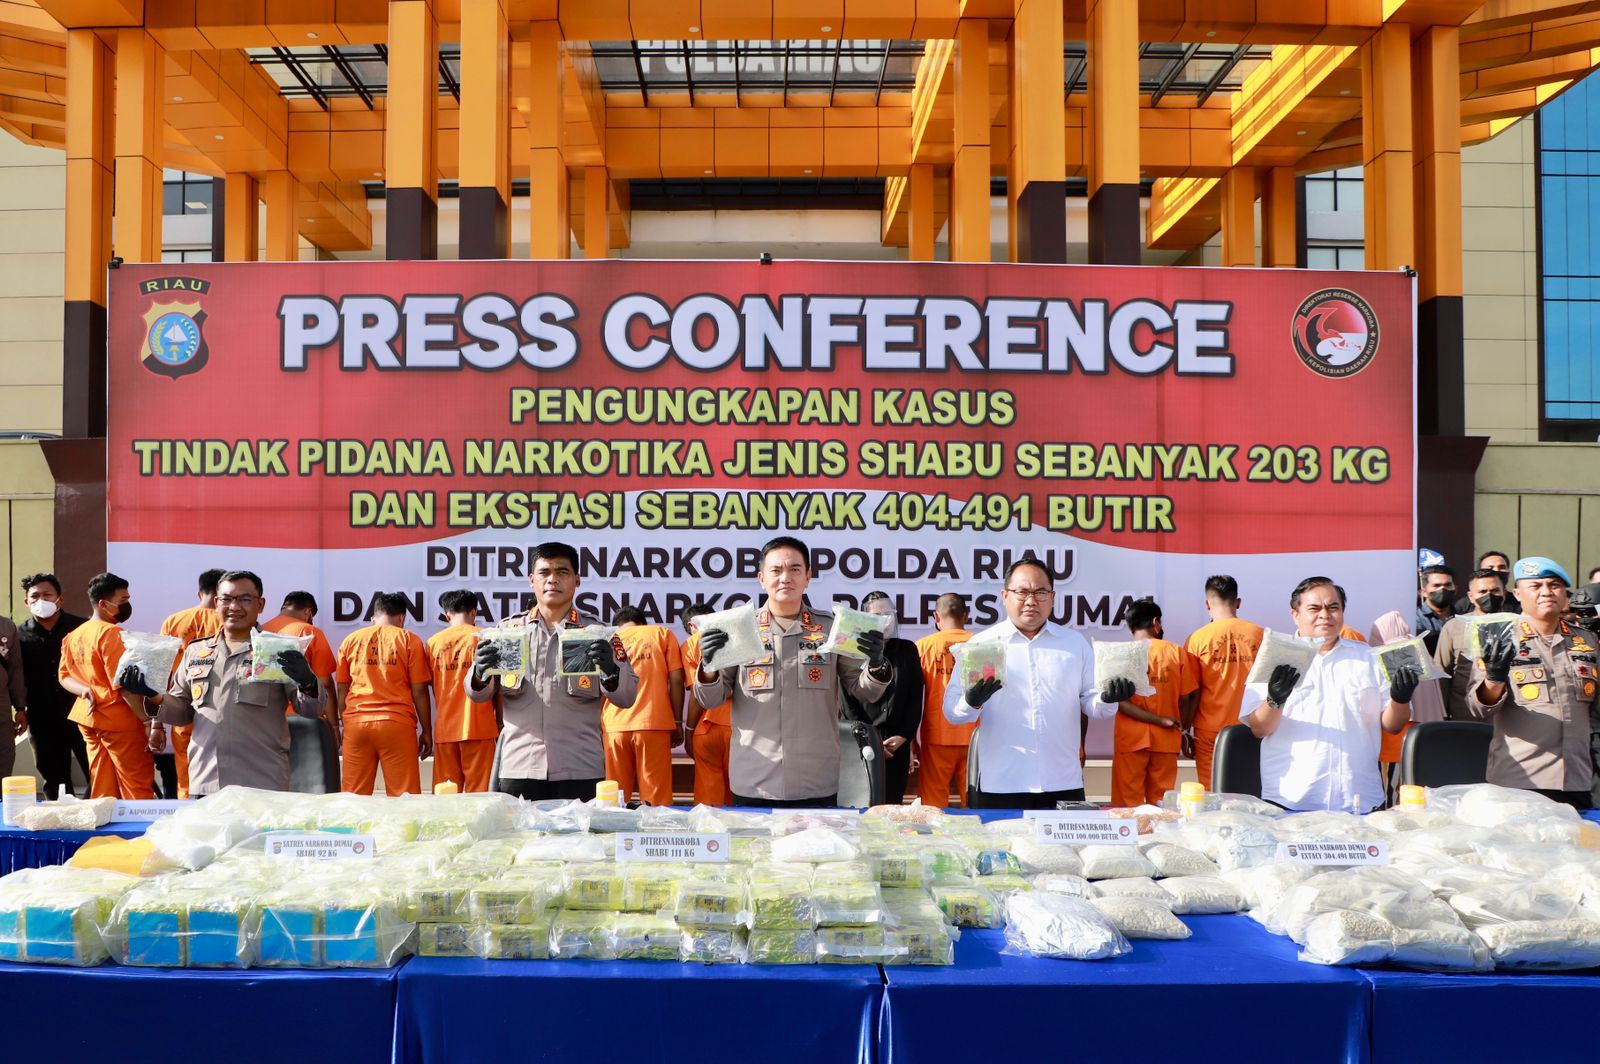 Sejarah Baru Keberhasilan Polda Riau Ungkap Kasus Narkoba, Amankan 203 KG Sabu dan 404.491 Butir Eks